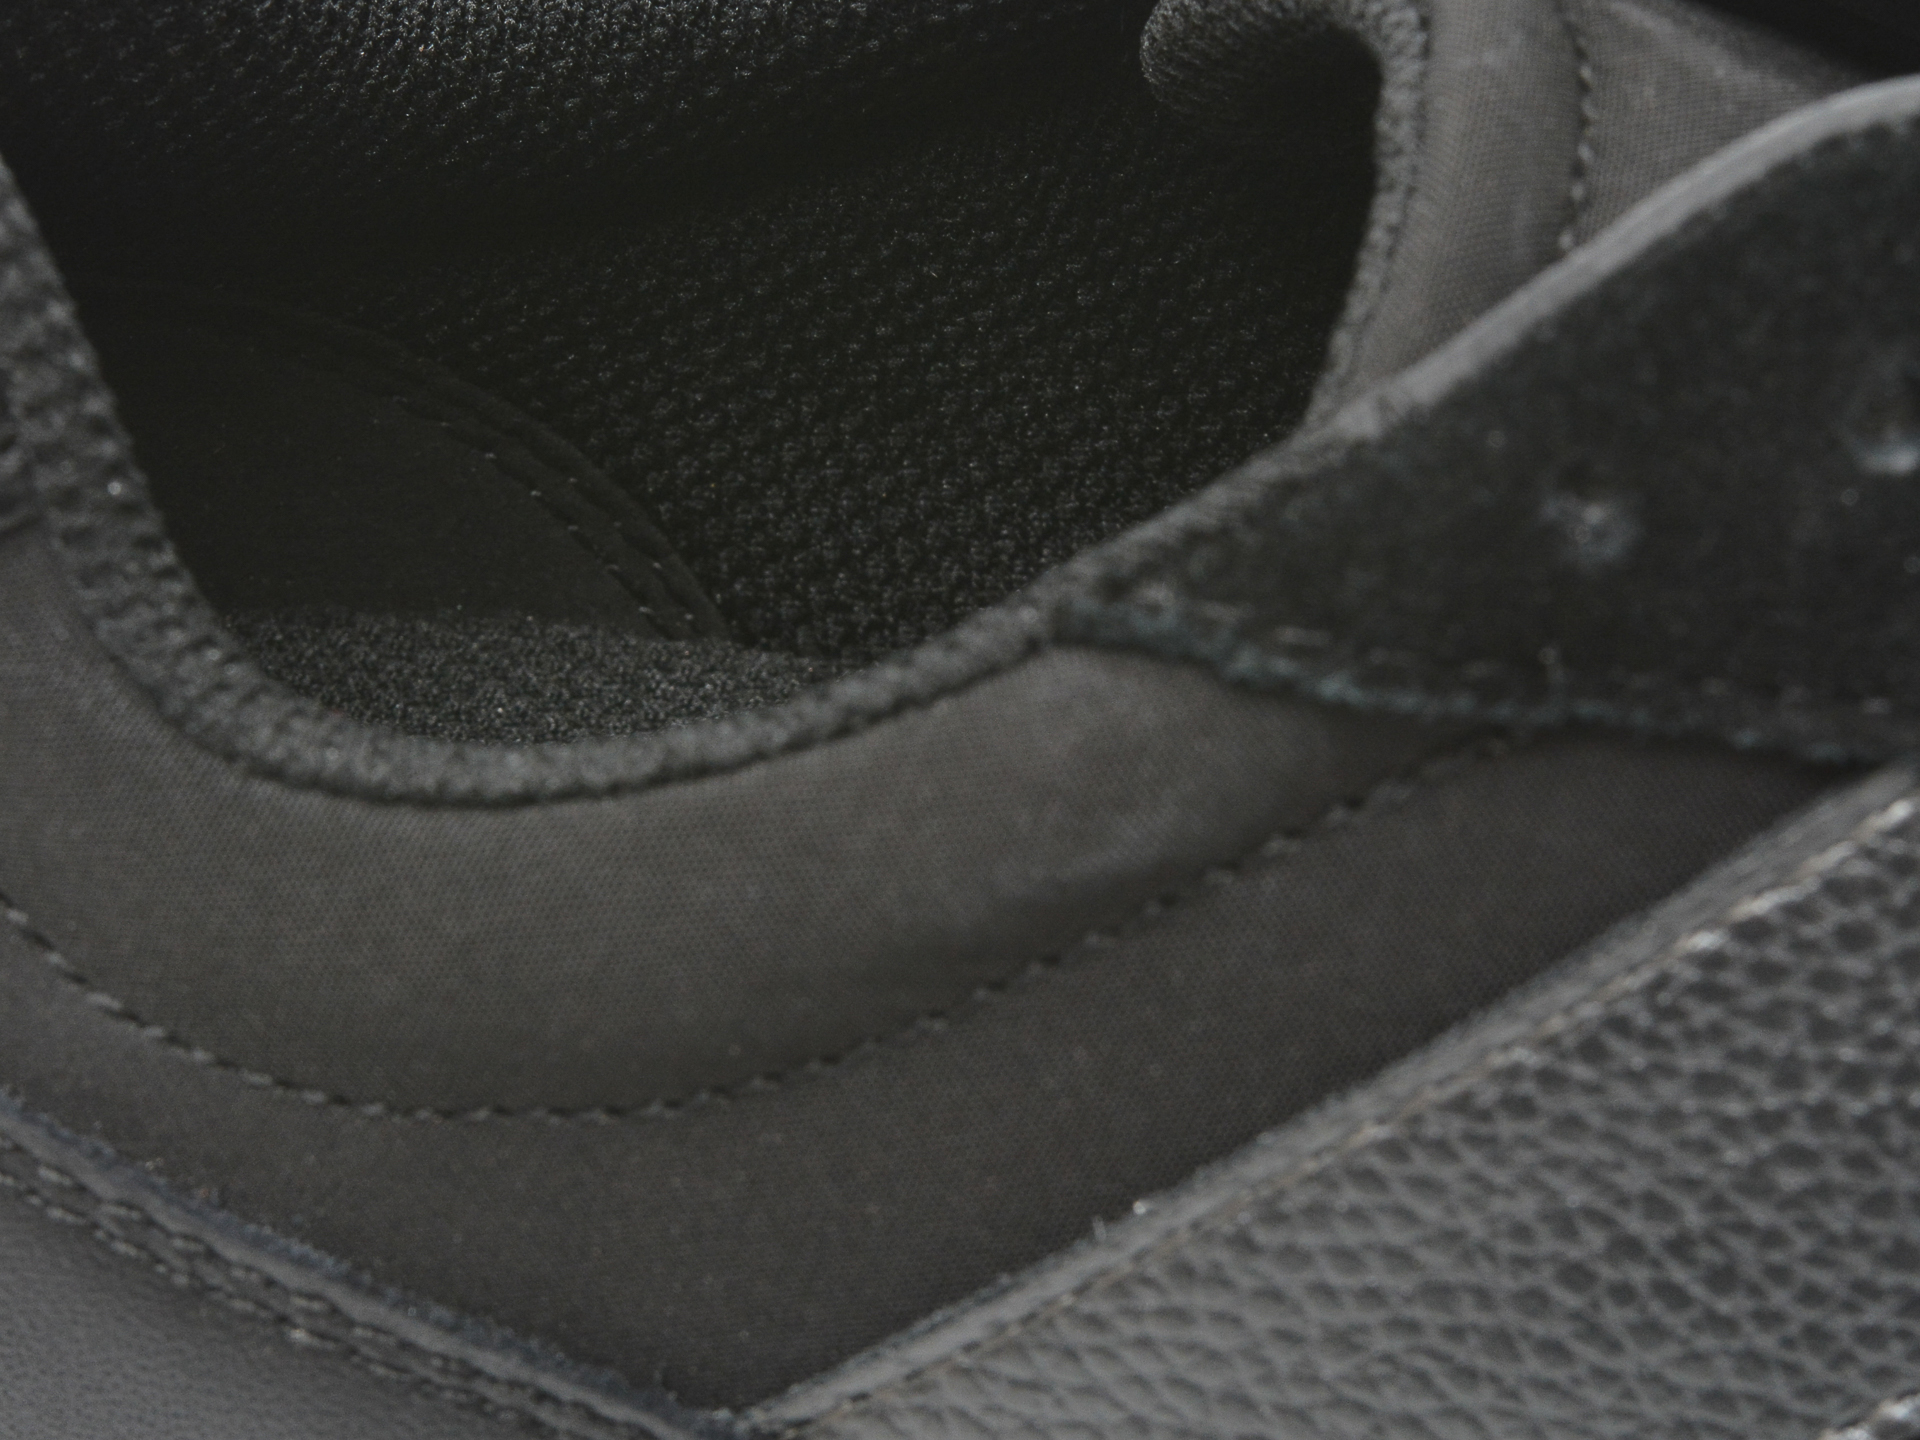 Poze Pantofi sport GEOX negri, D25RRB, din piele naturala tezyo.ro - by OTTER Distribution